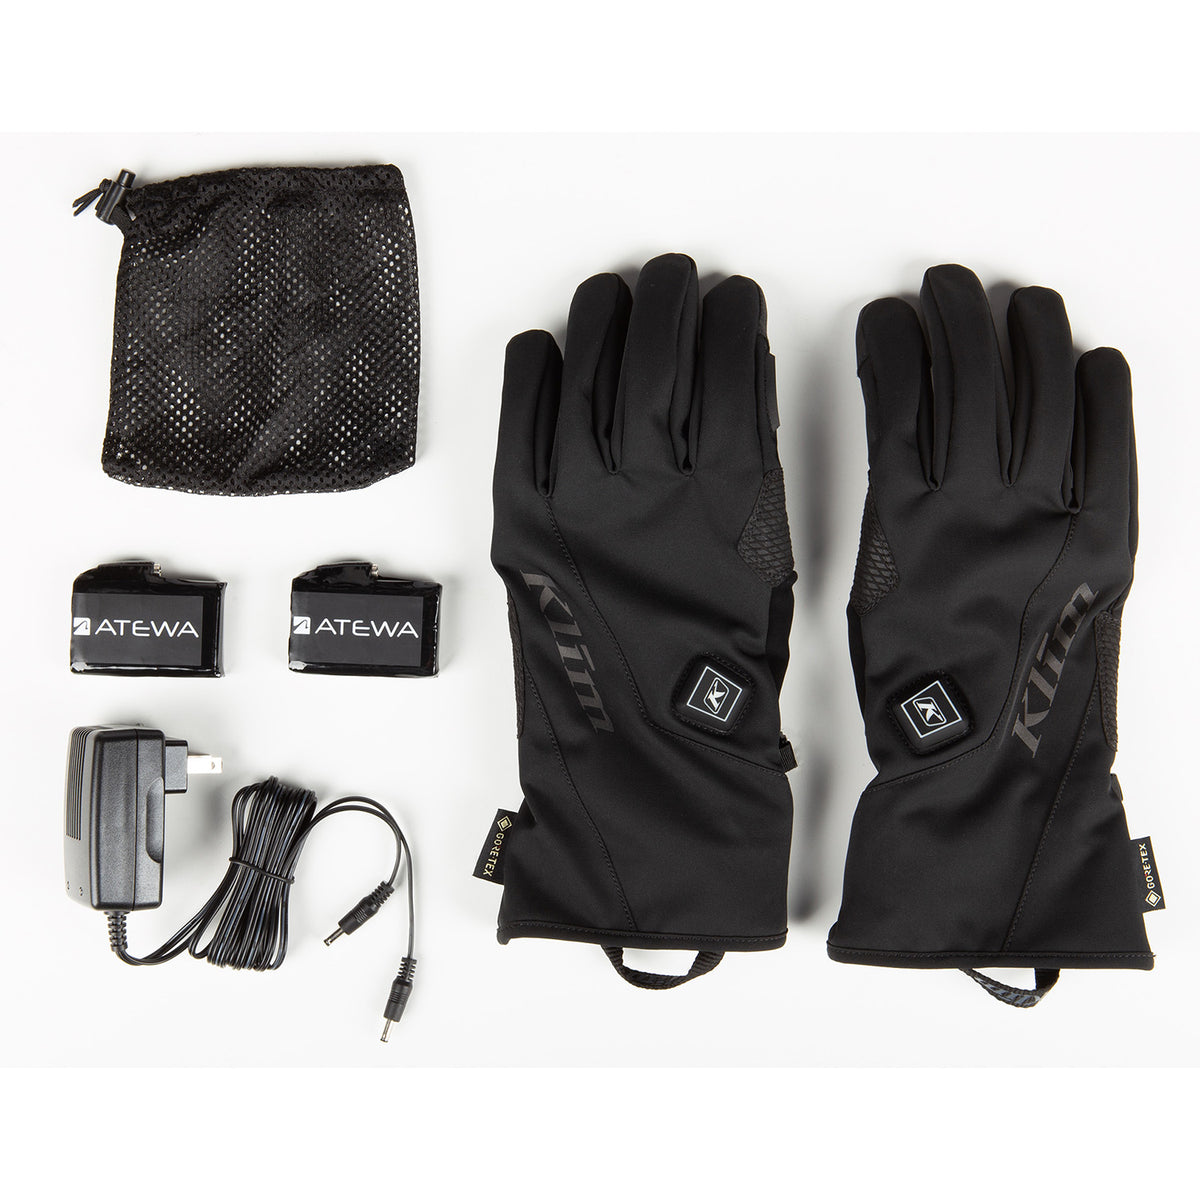 Klim Inversion GTX HTD Glove